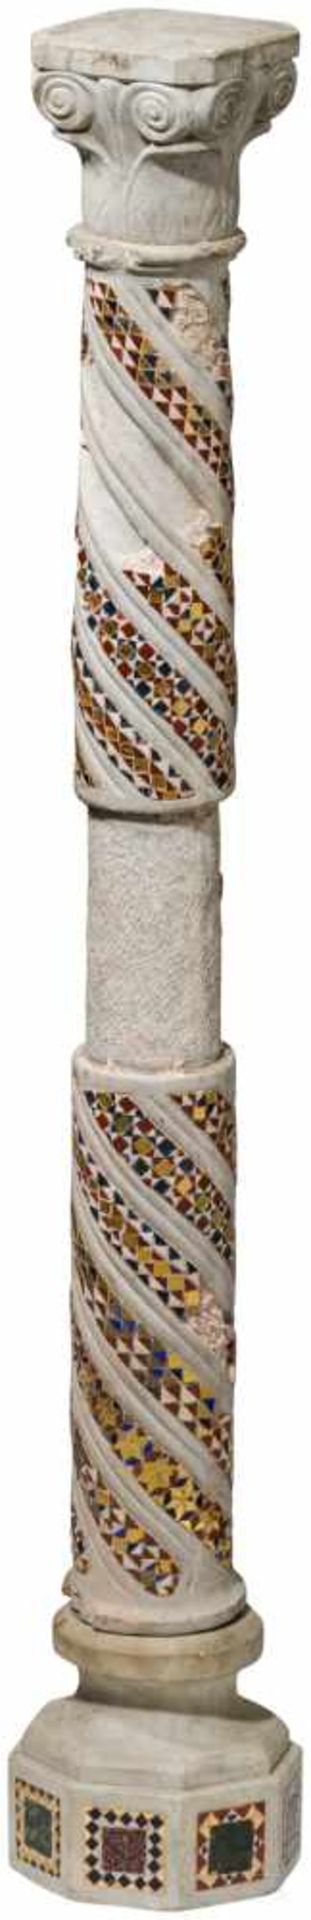 Mosaiksäule, Italien, 18. Jhdt.Leicht gemaserter Marmor. Säule mit Kompositkapitell, spiralig